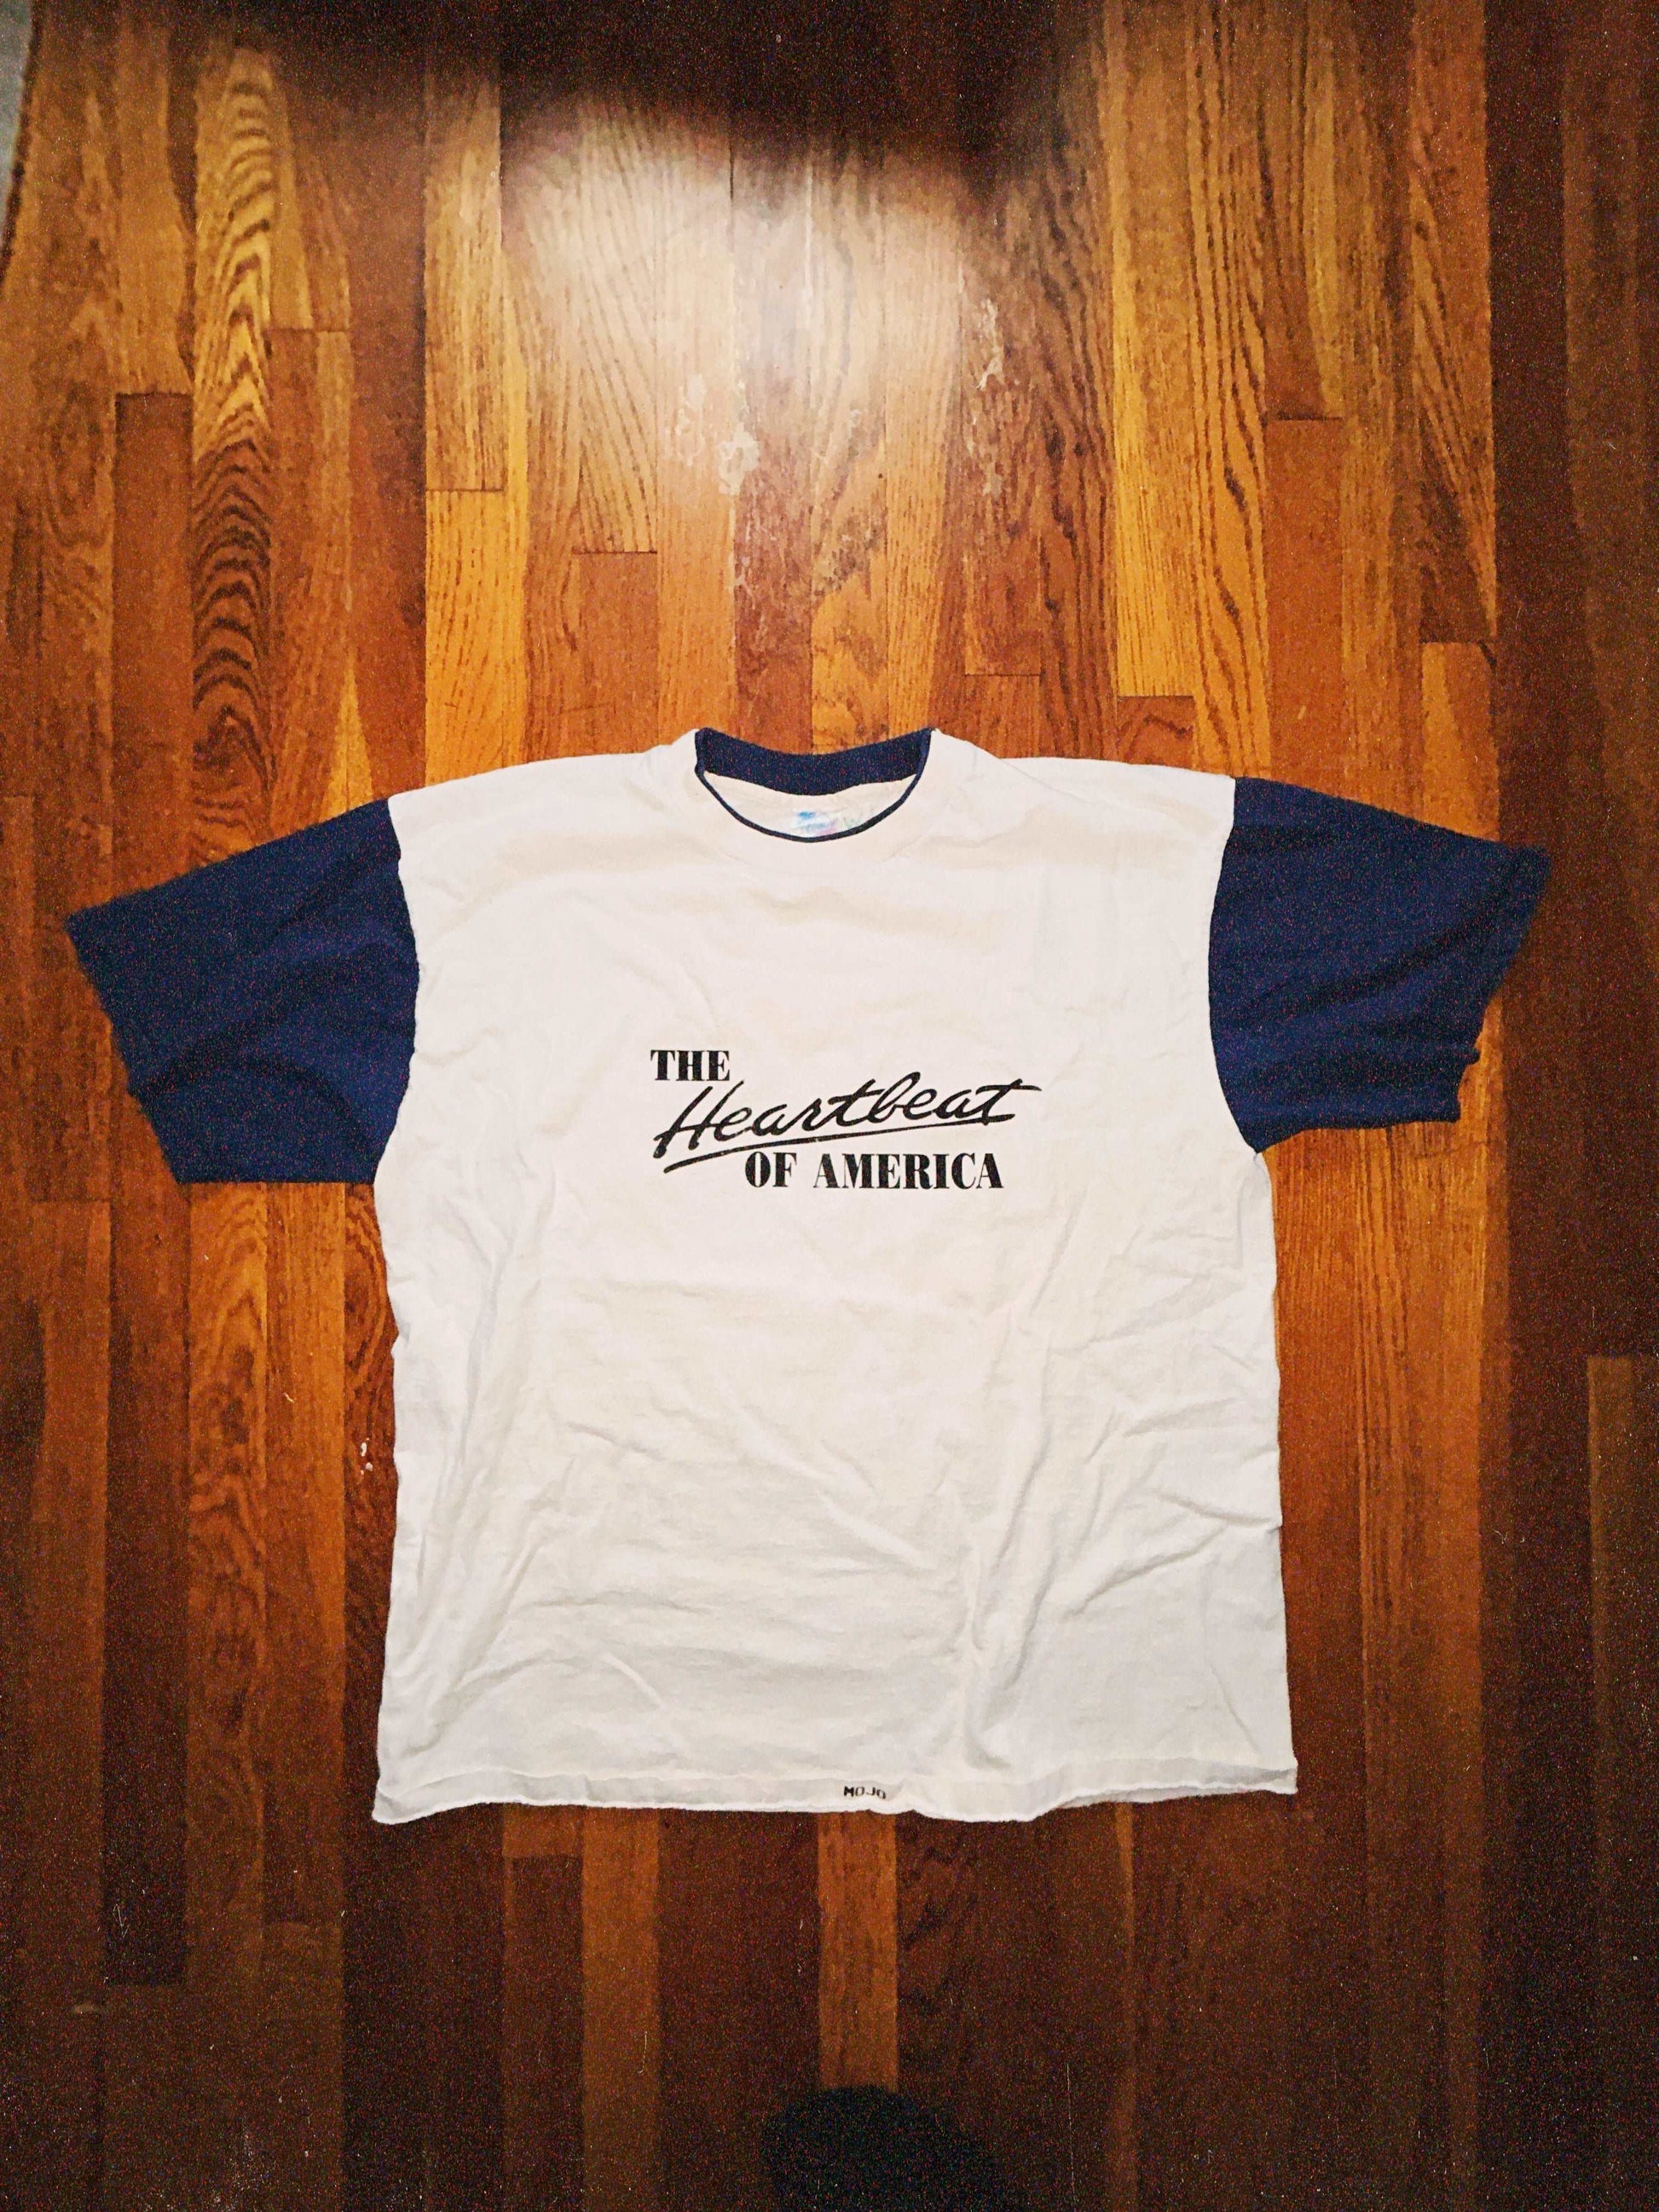 Heartbeat of America T-Shirt Size - XL